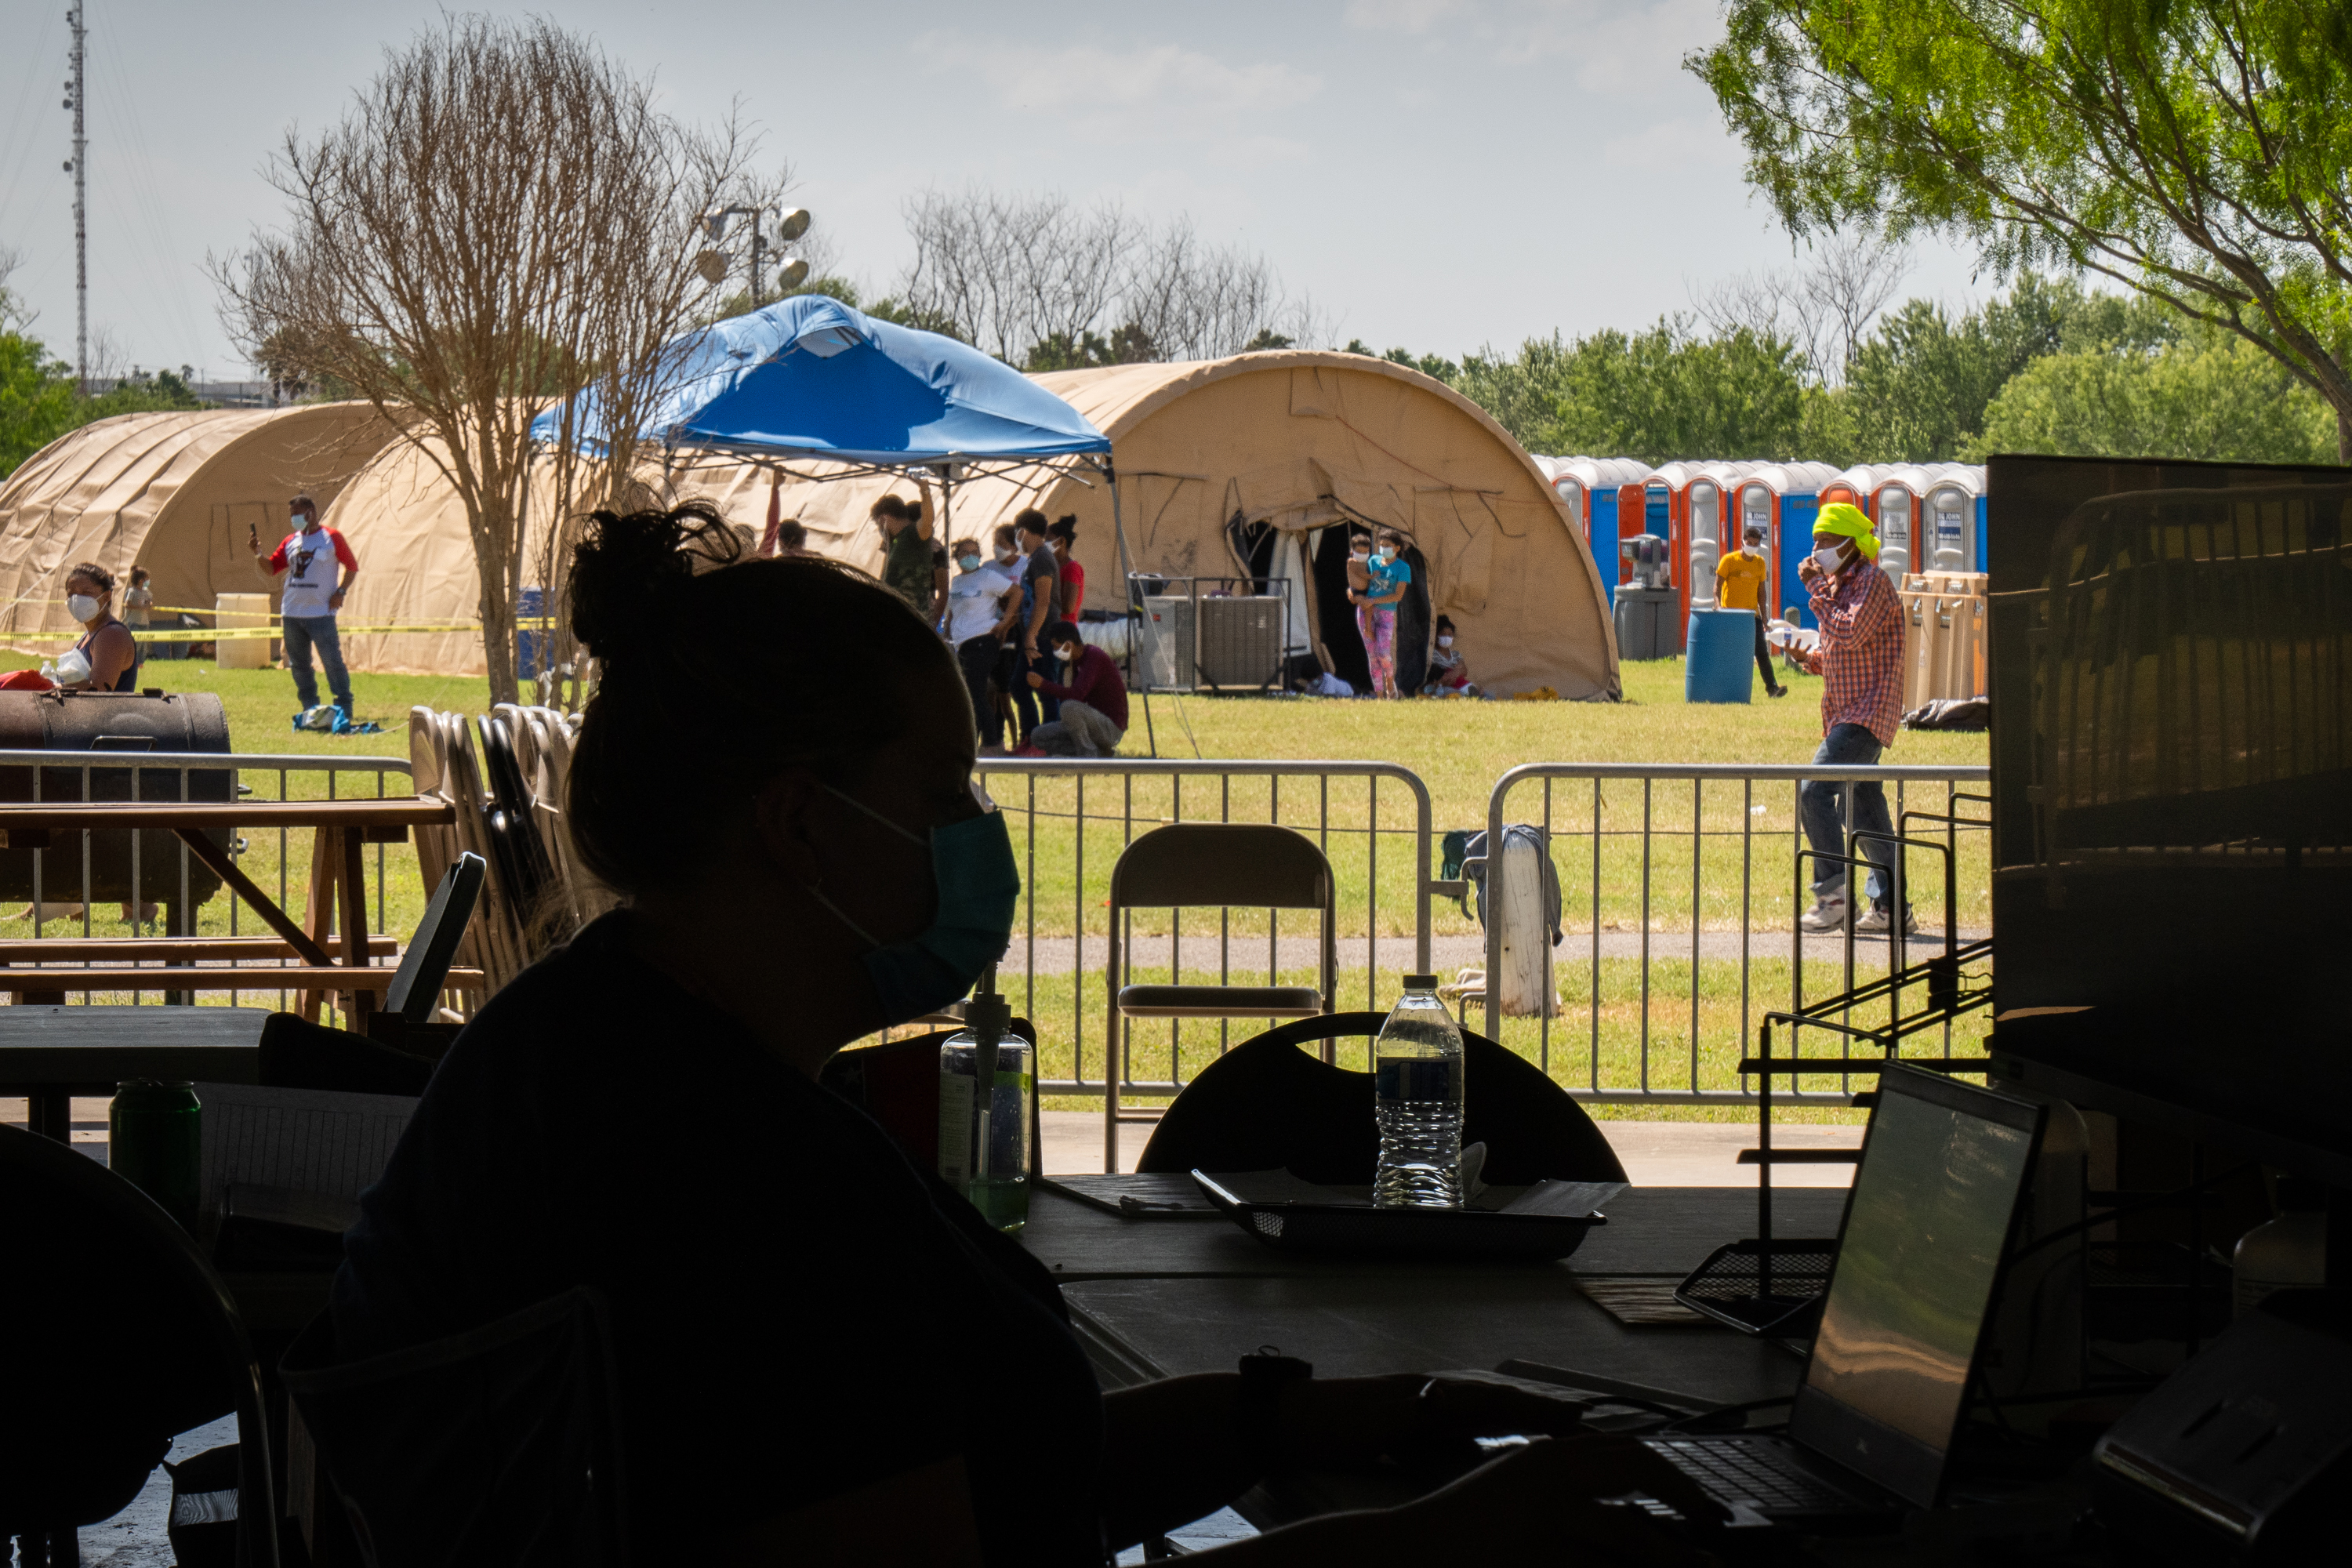 Los migrantes que dieron positivo al coronavirus son puestos en cuarentena en el parque Anzalduas en Mission, Texas, el domingo 8 de agosto de 2021. (Foto Prensa Libre: Sarahbeth Maney / The New York Times)